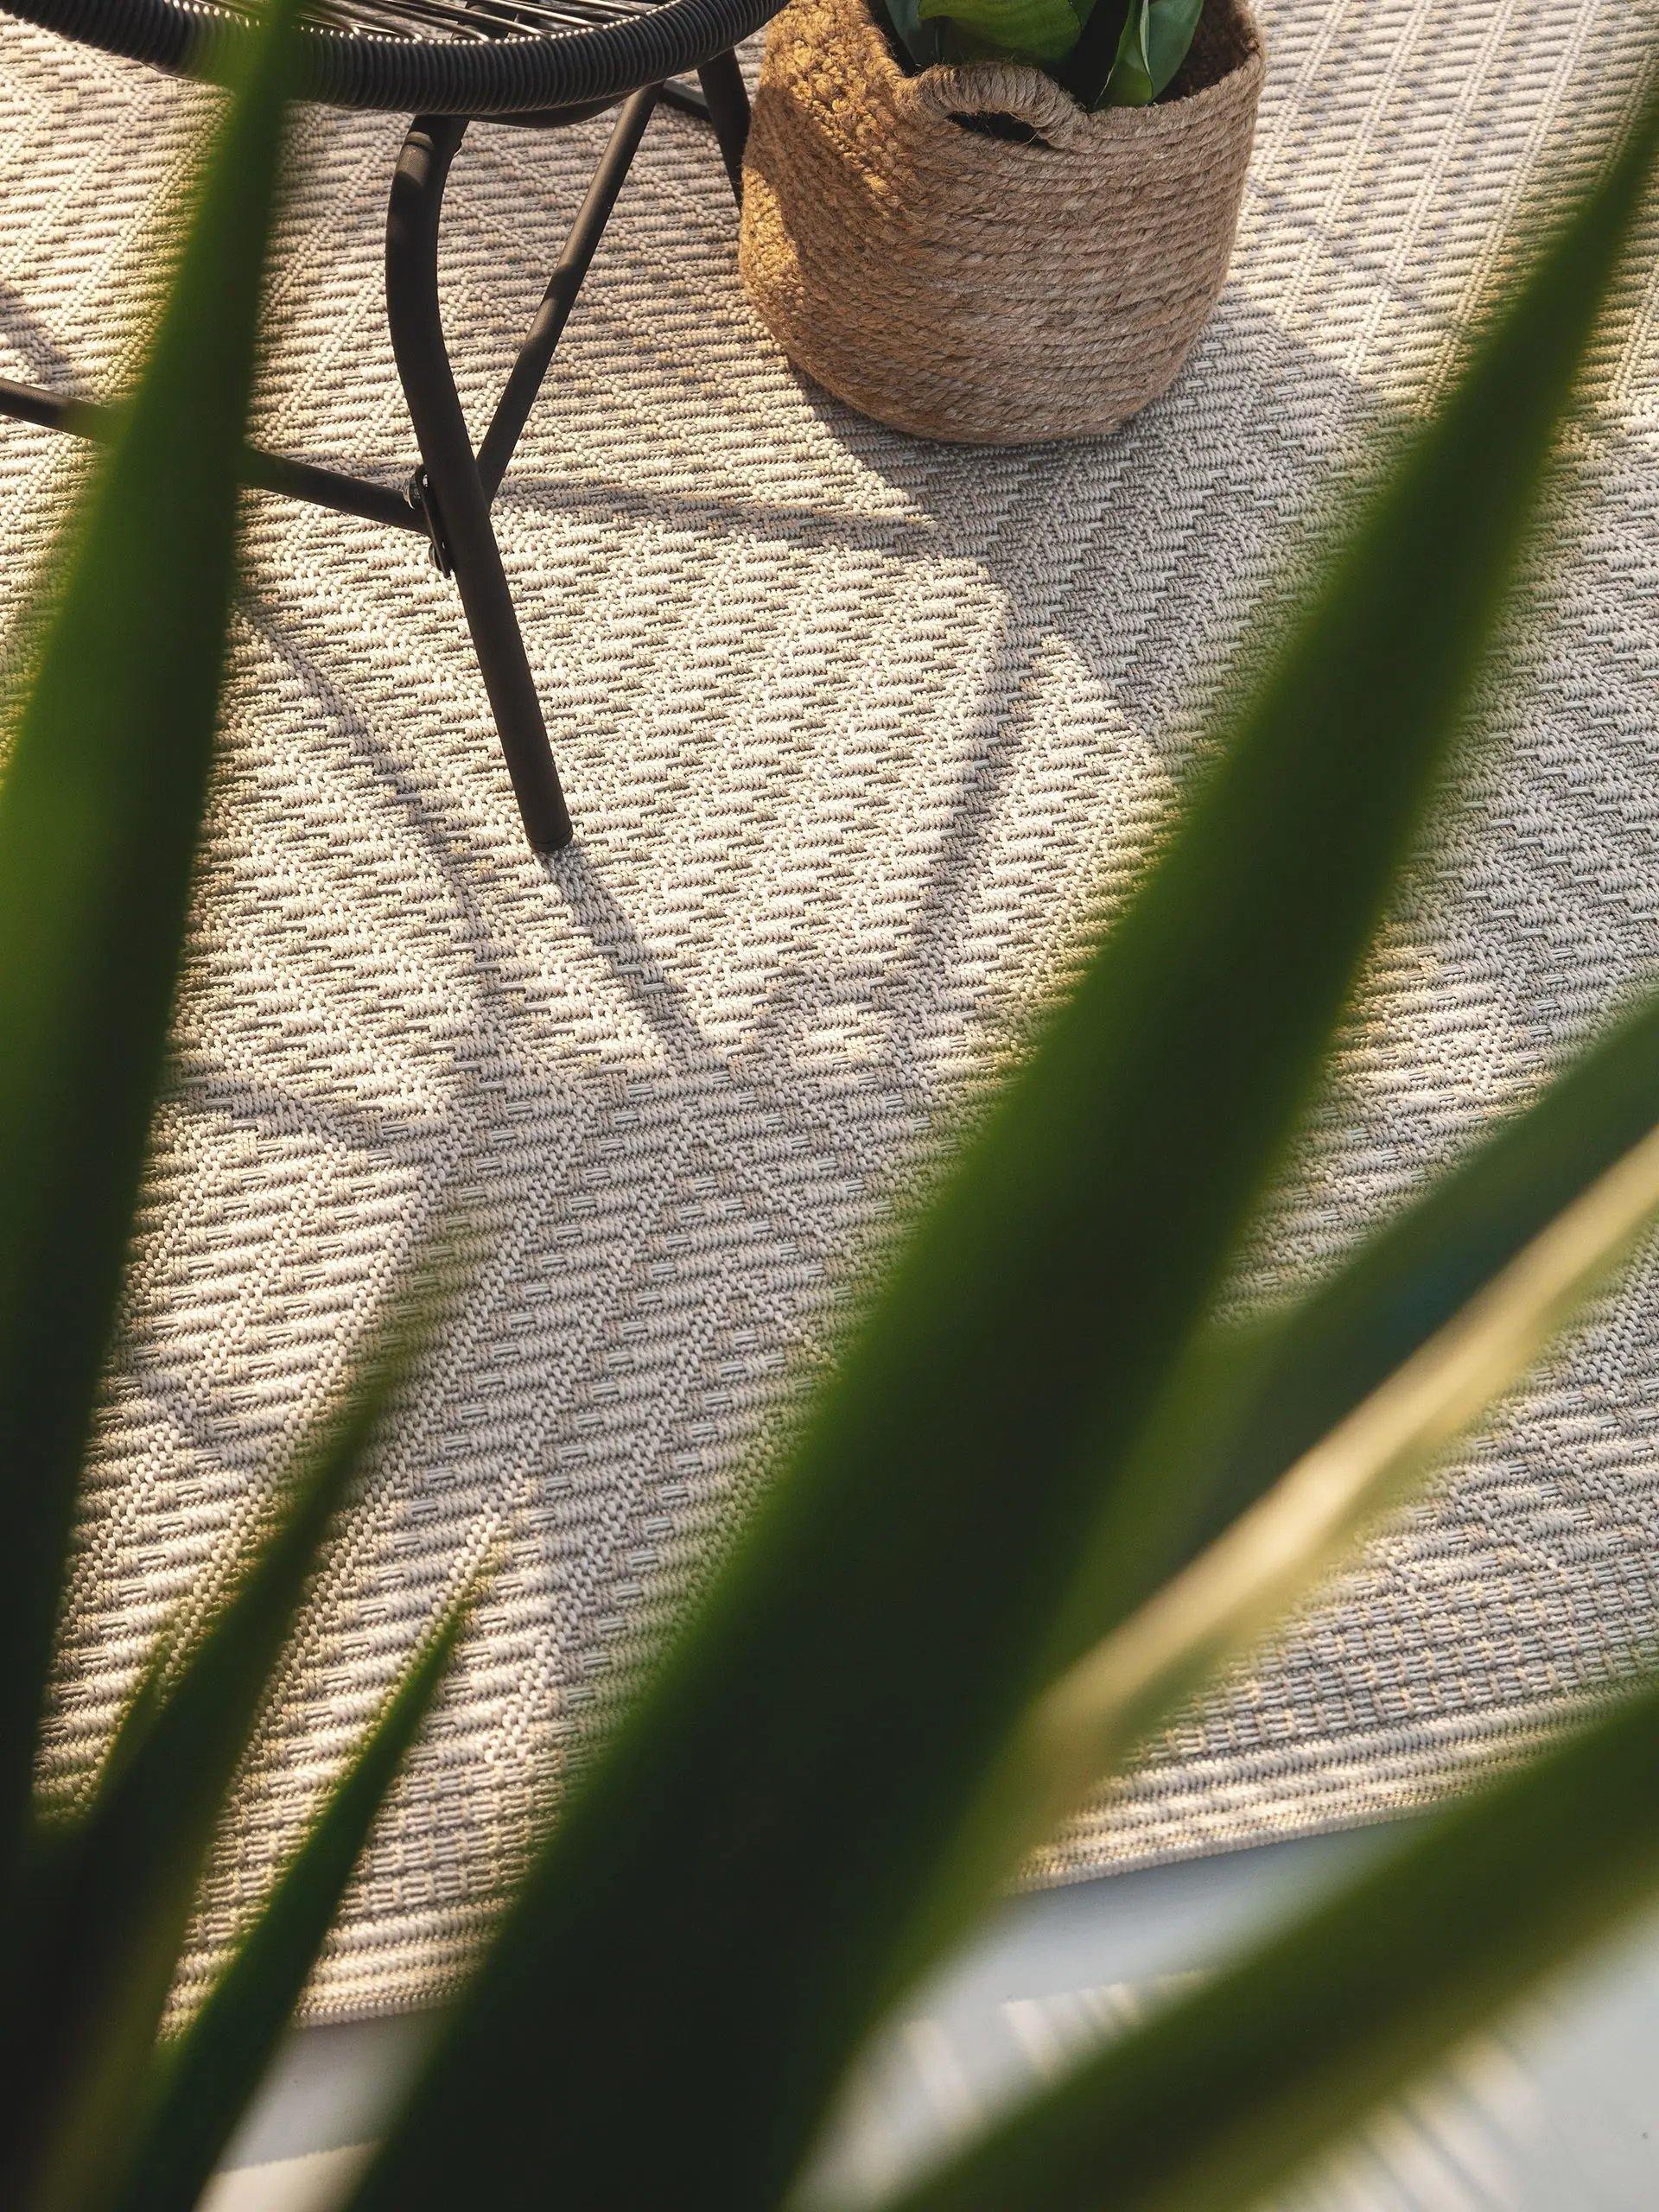 Benuta Outdoor Teppich Naoto, weiß  | Wohnmobil Ausstattung |  Wildnest Glamping